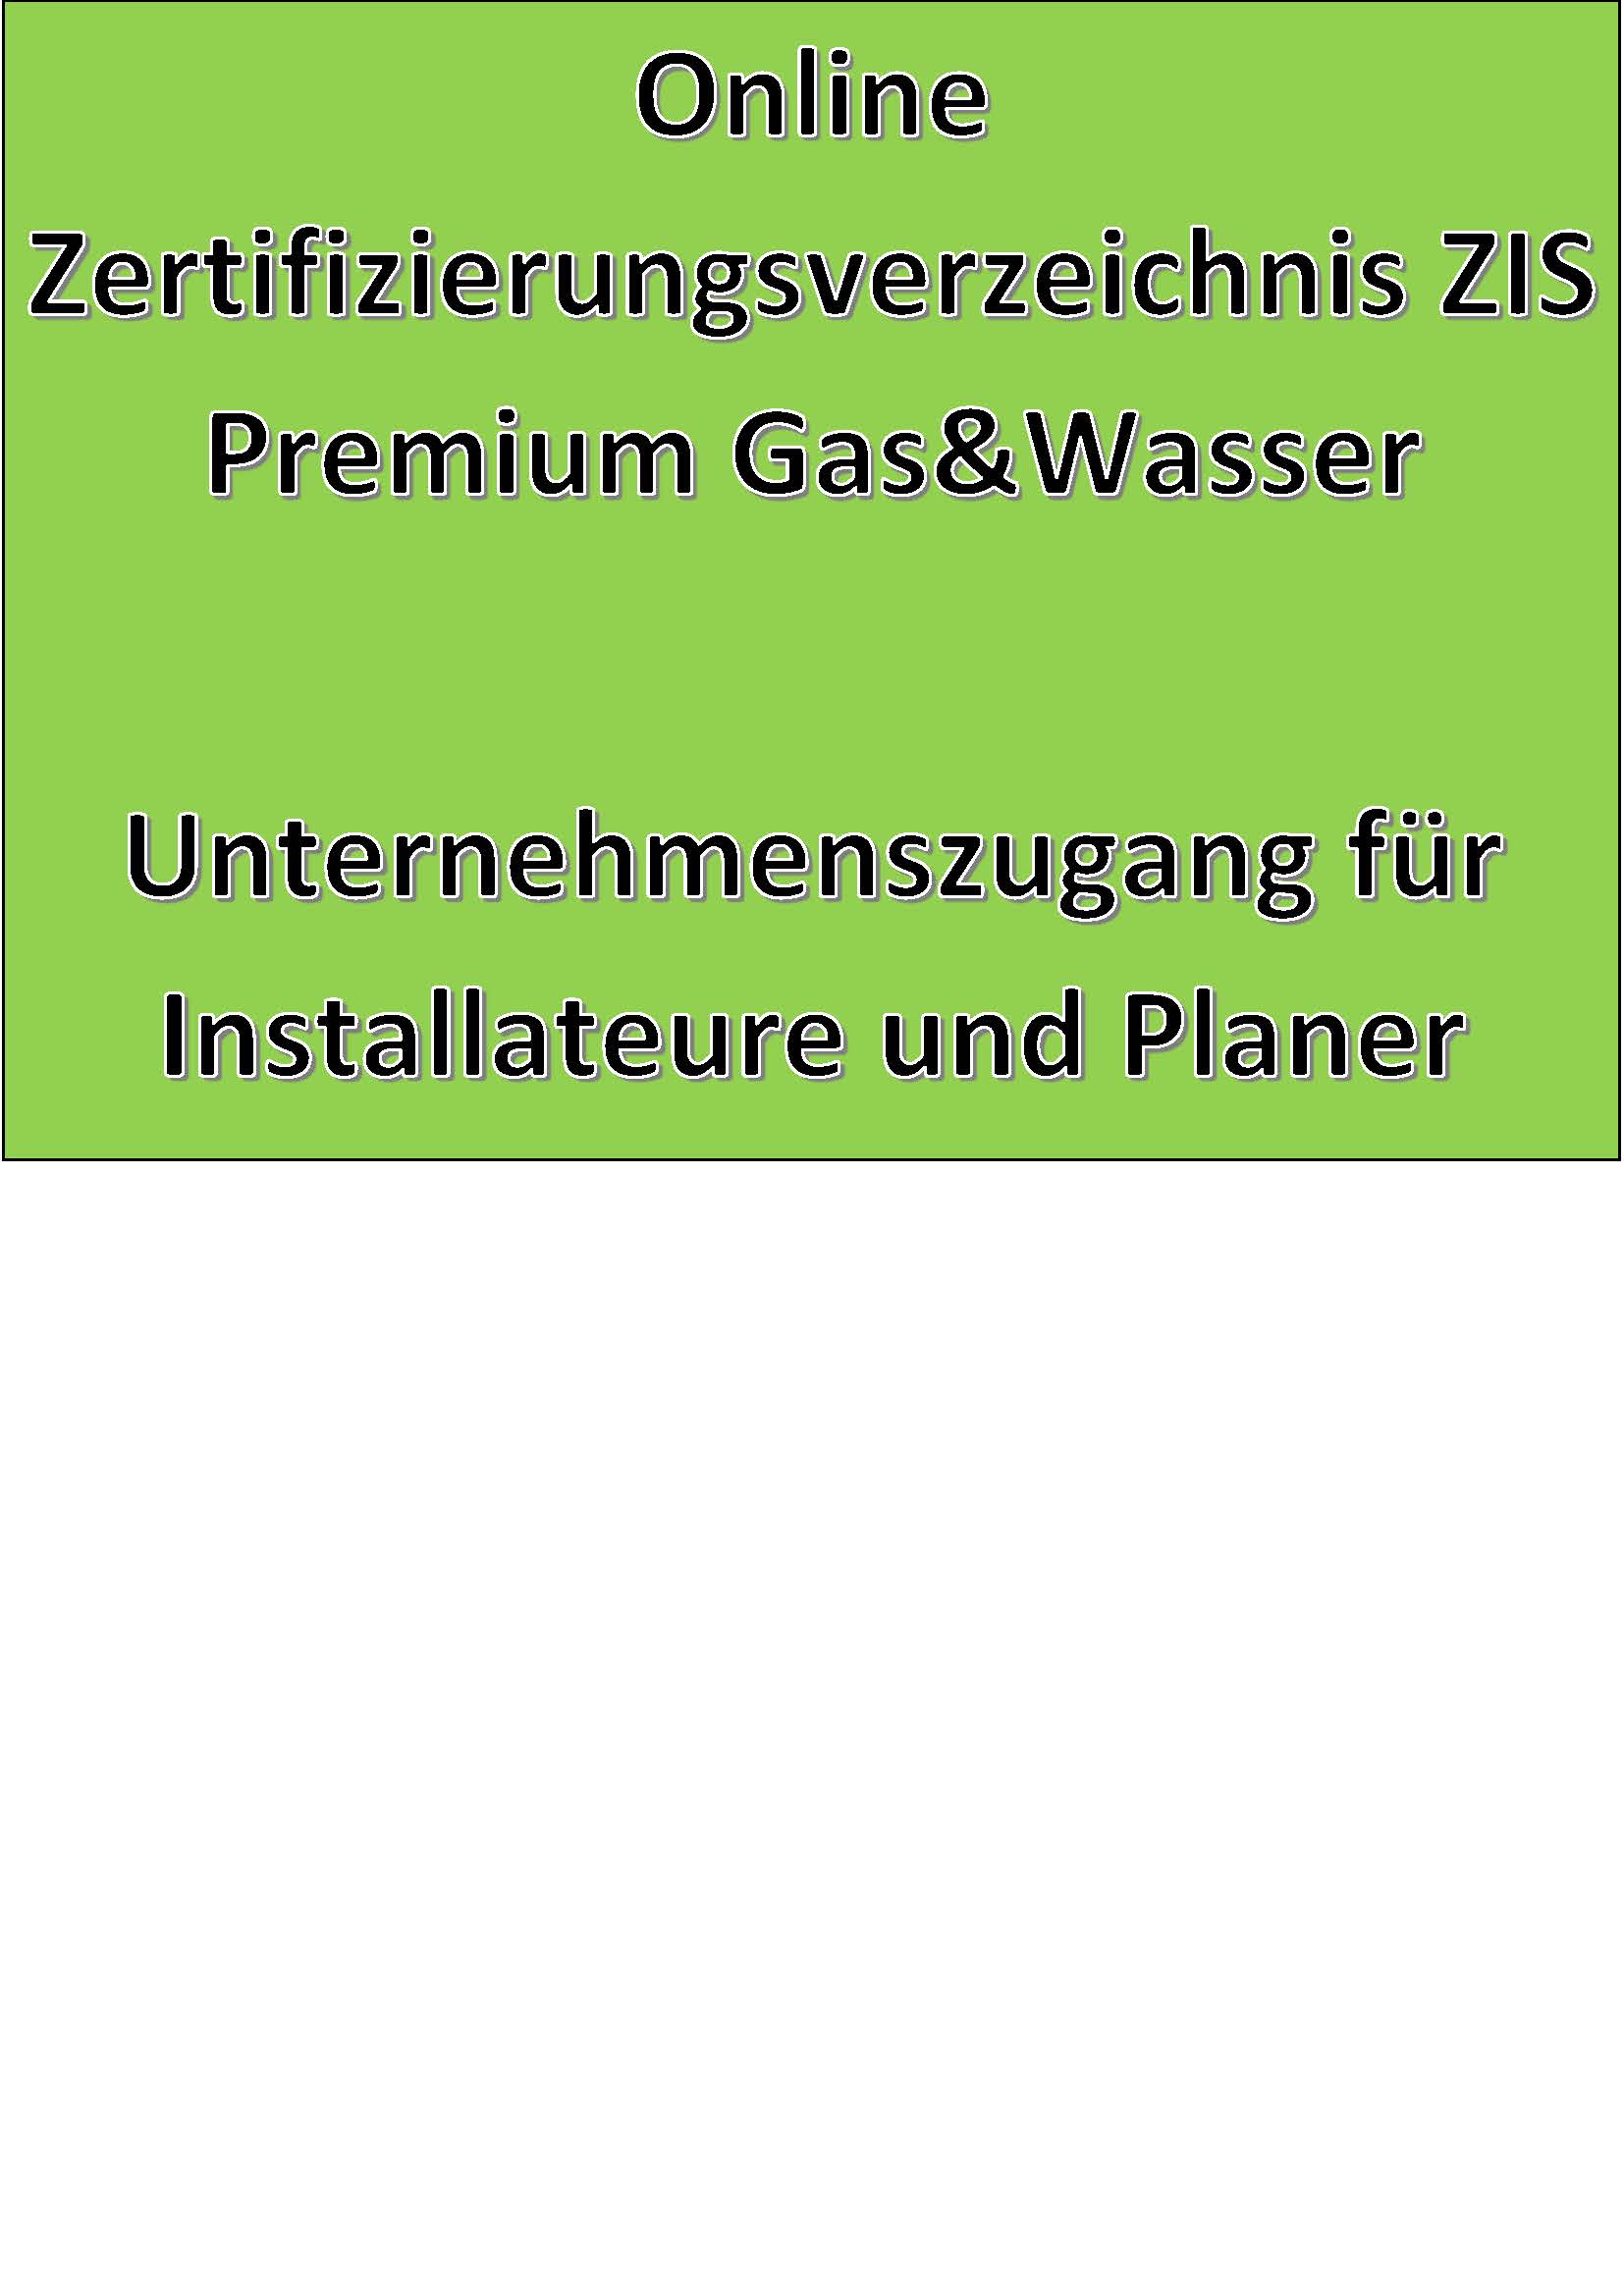 Online Zertifizierungsverzeichnis ZIS Premium Gas&Wasser Unternehmenszugang für Installateure und Planer